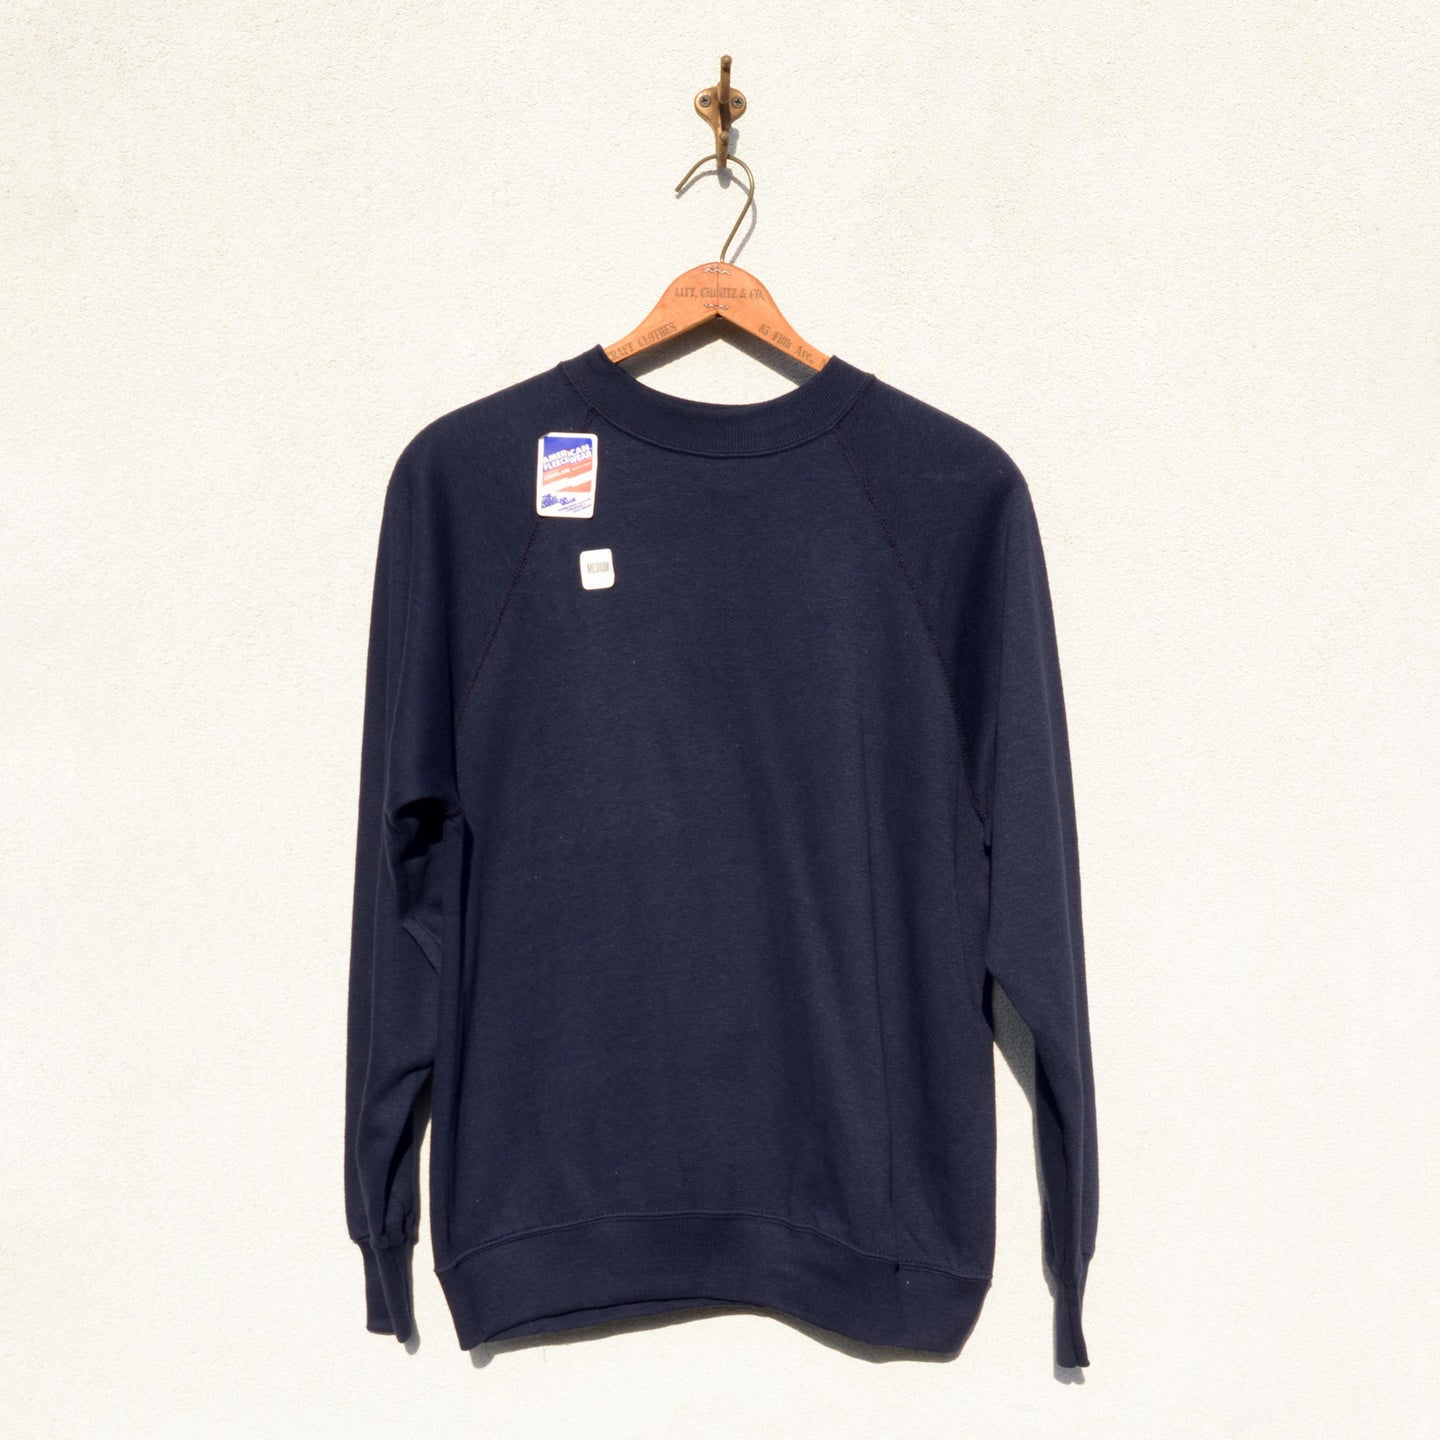 AMERICAN FLEECEWEAR - Cotton Acrylic Sweatshirt